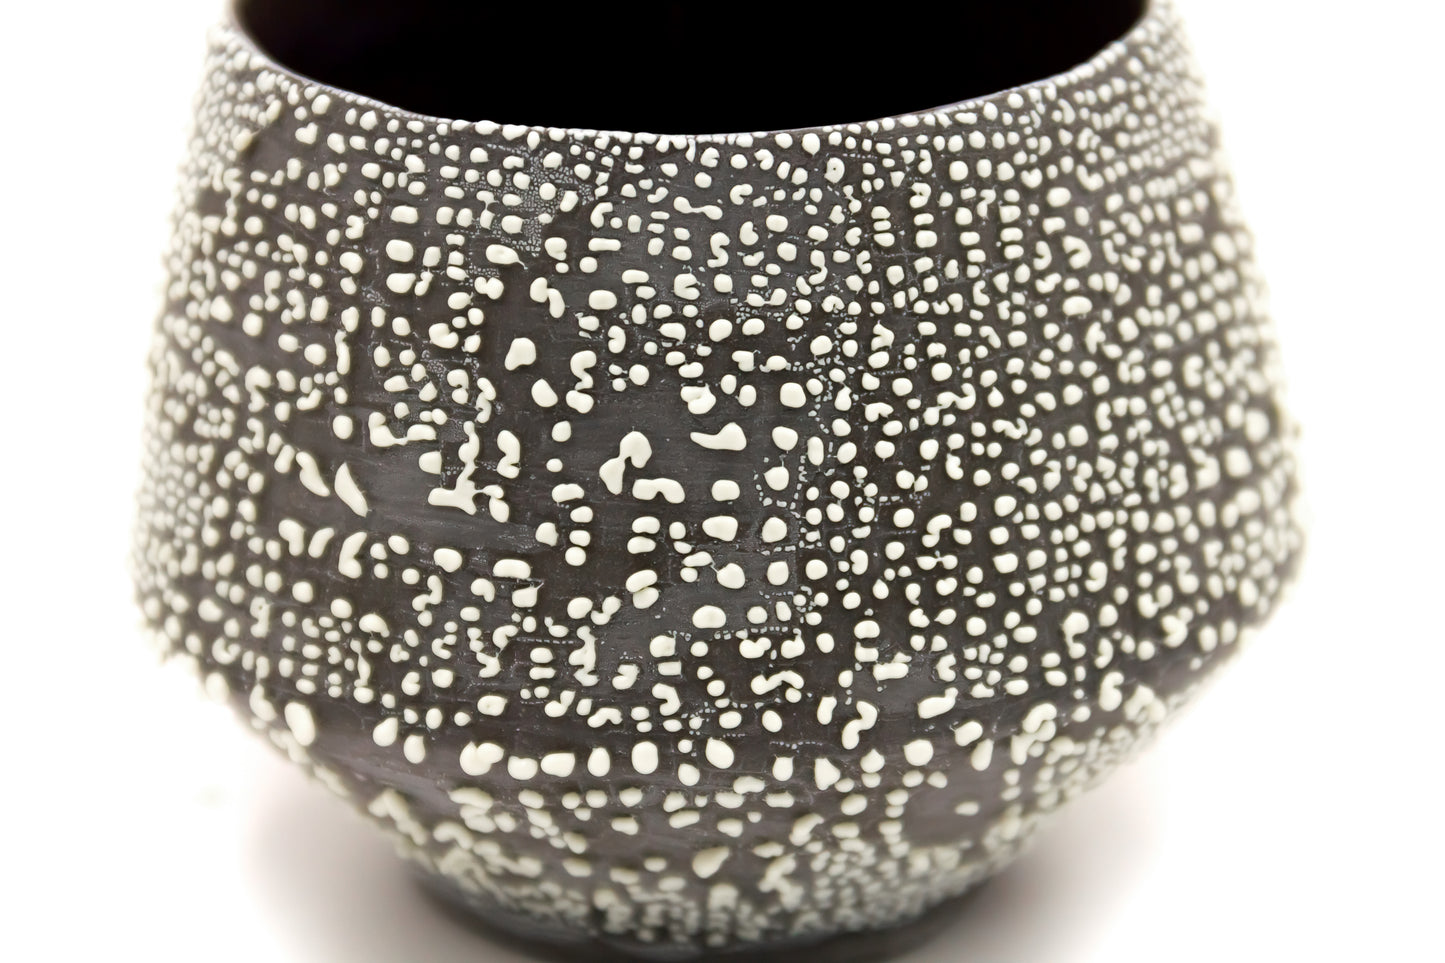 Czarka ceramiczna w kolorze czarno-białym